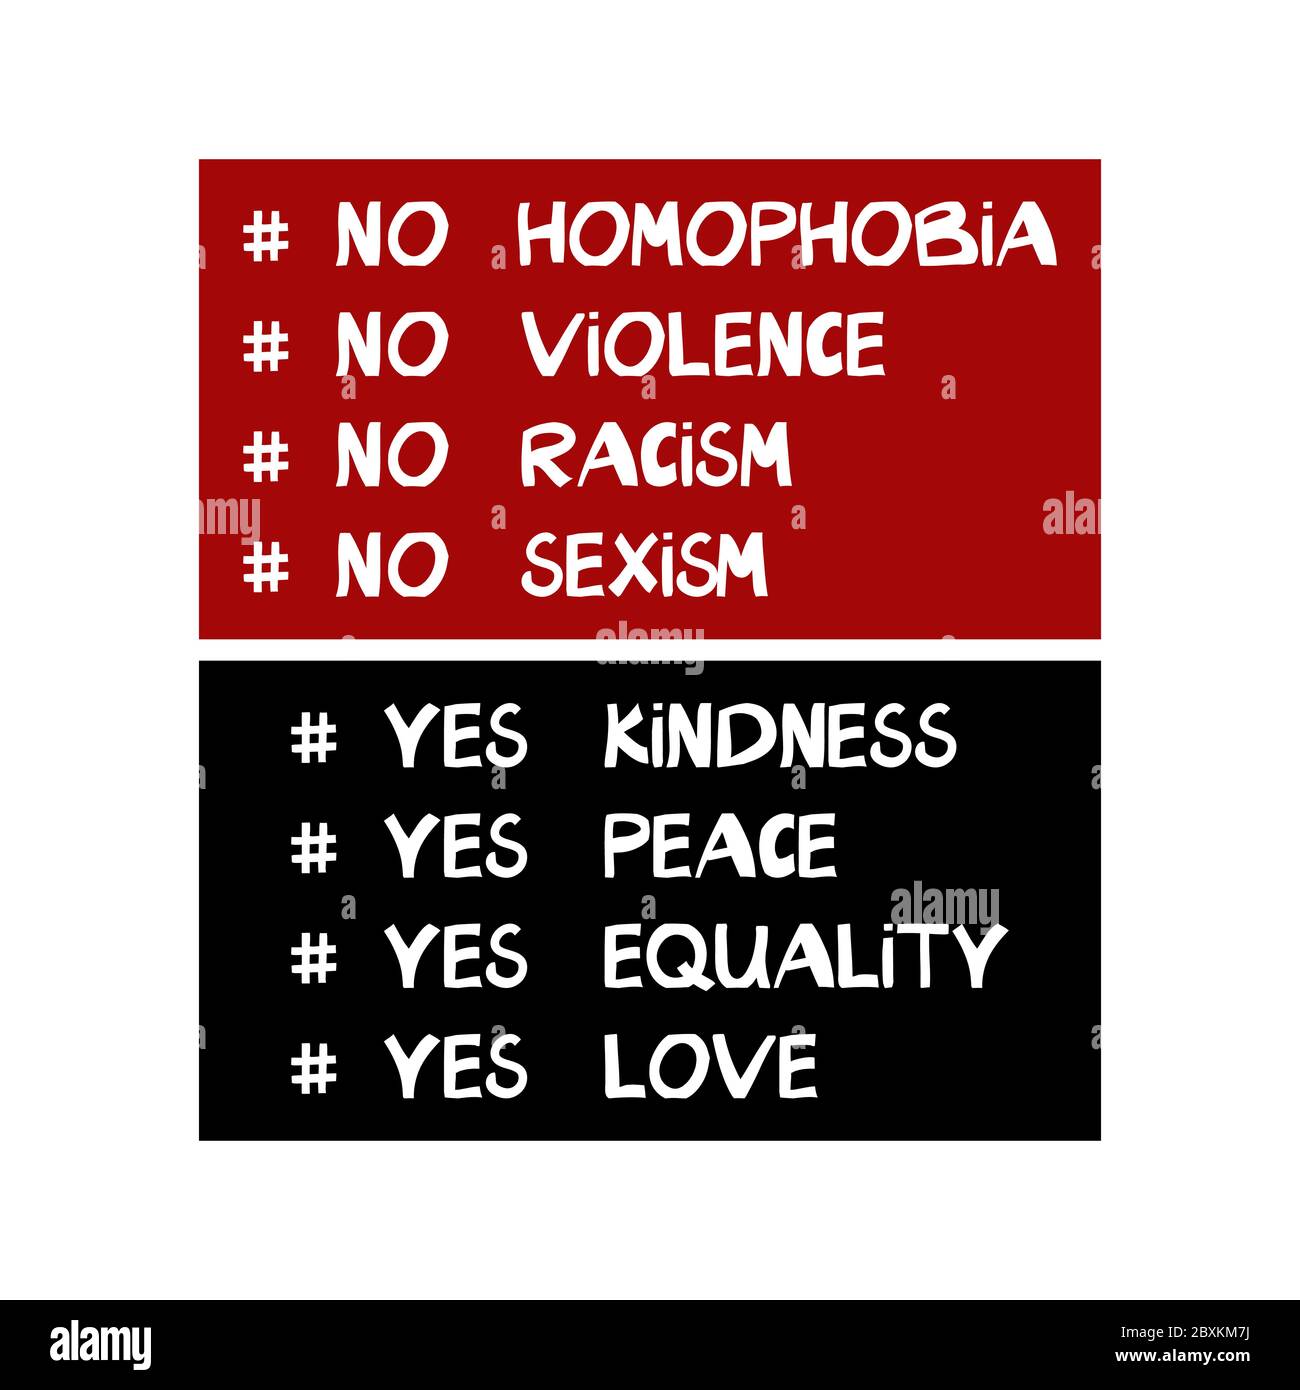 Keine Homophobie, Gewalt, Rassismus, Sexismus. Ja Güte, Frieden, Gleichheit, Liebe. Zitat über Menschenrechte. Schriftzug im modernen skandinavischen Stil. Isolat Stock Vektor